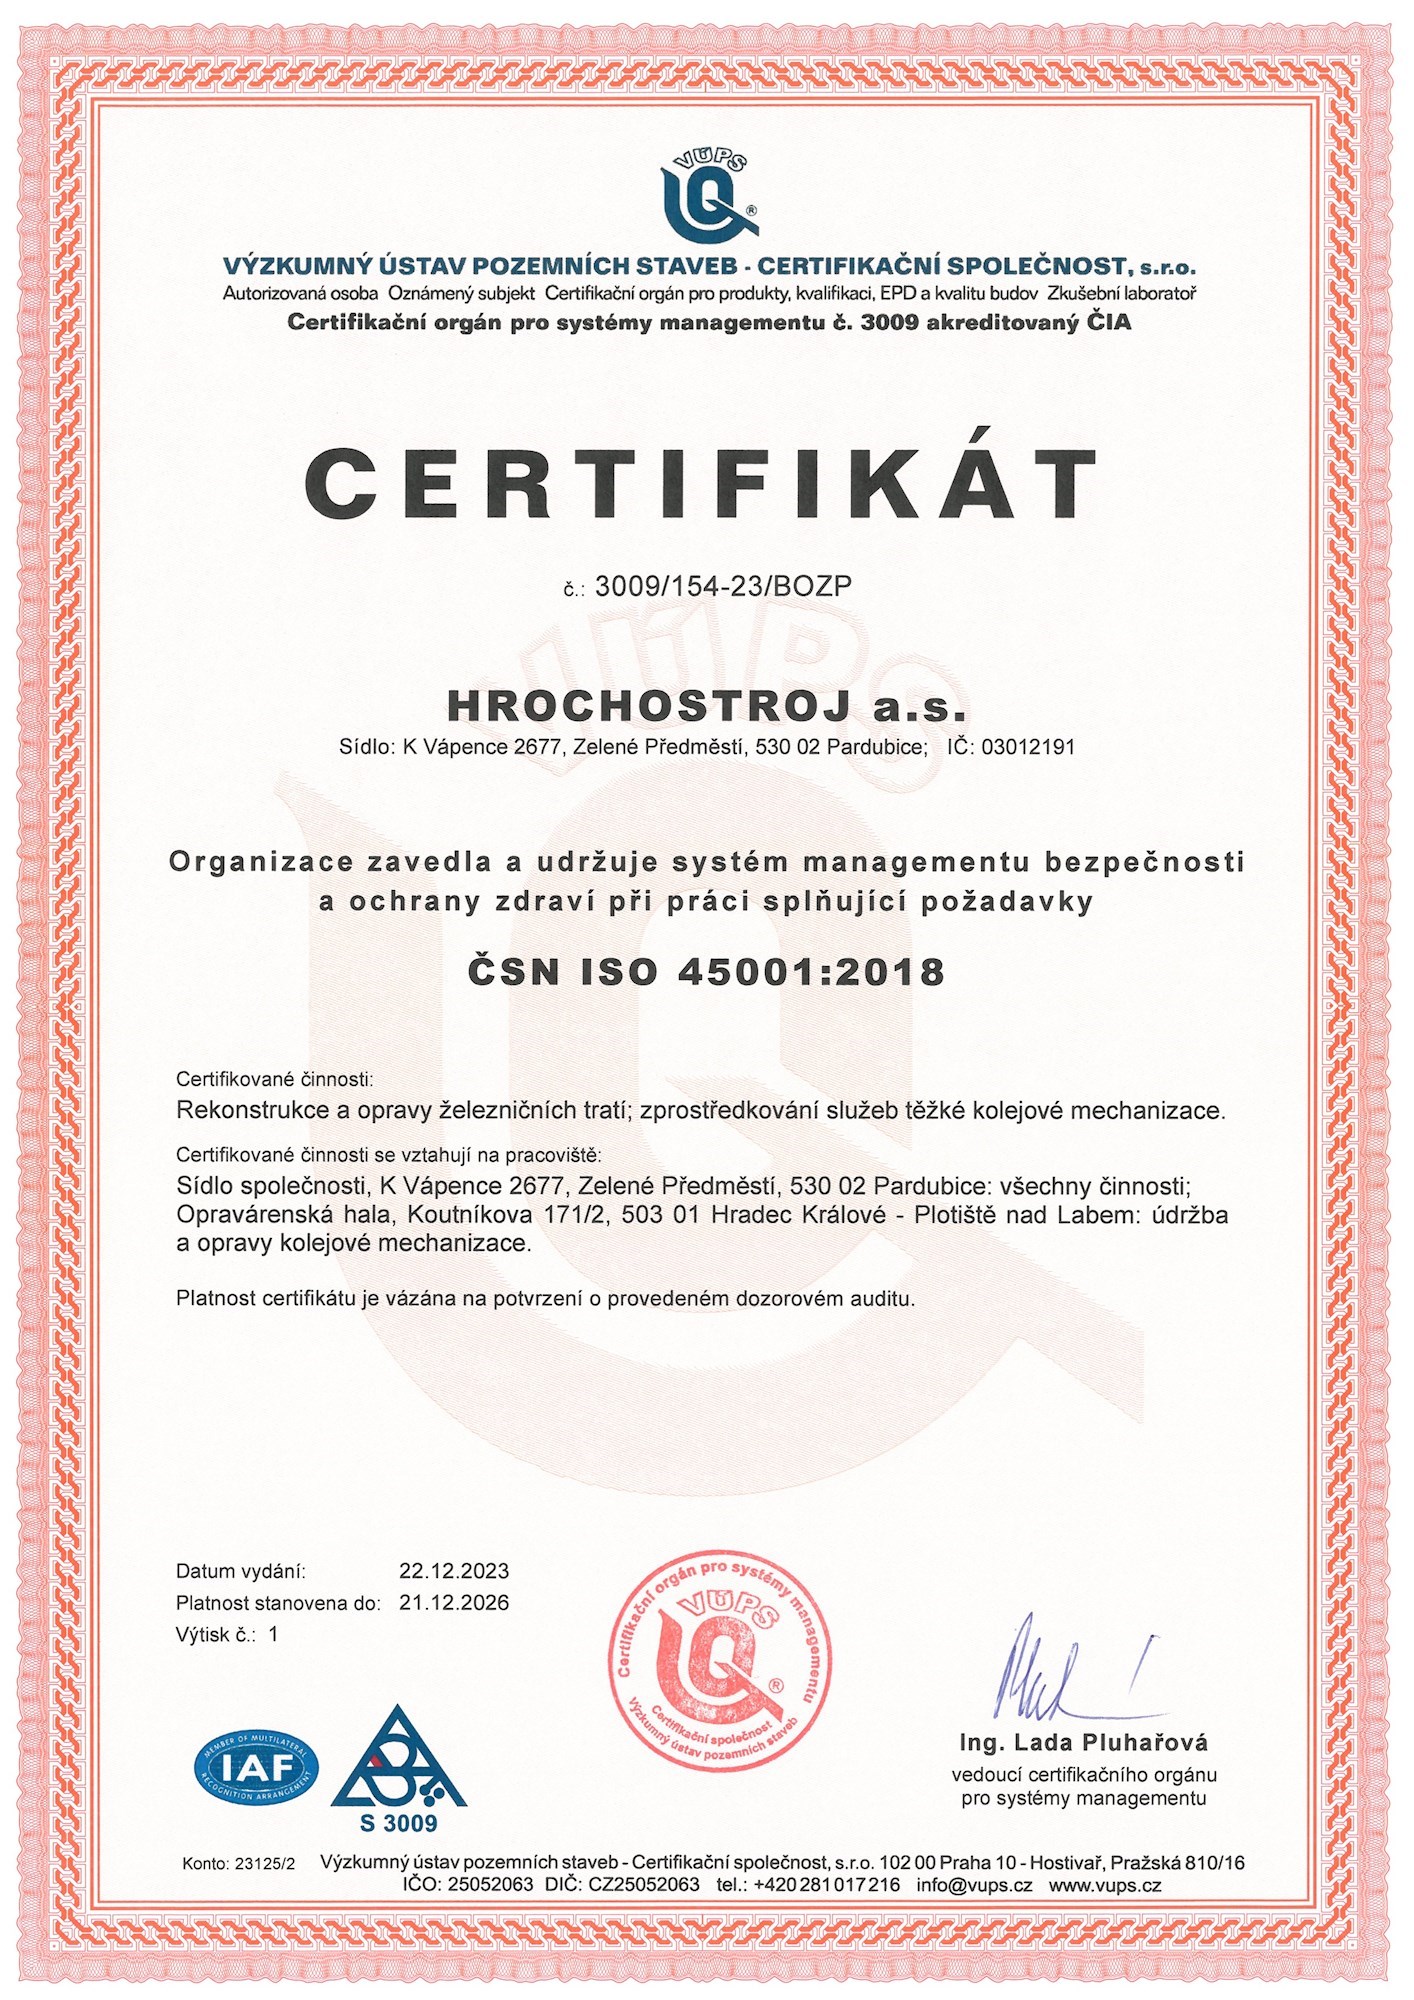 Certifikát ČSN EN ISO 01